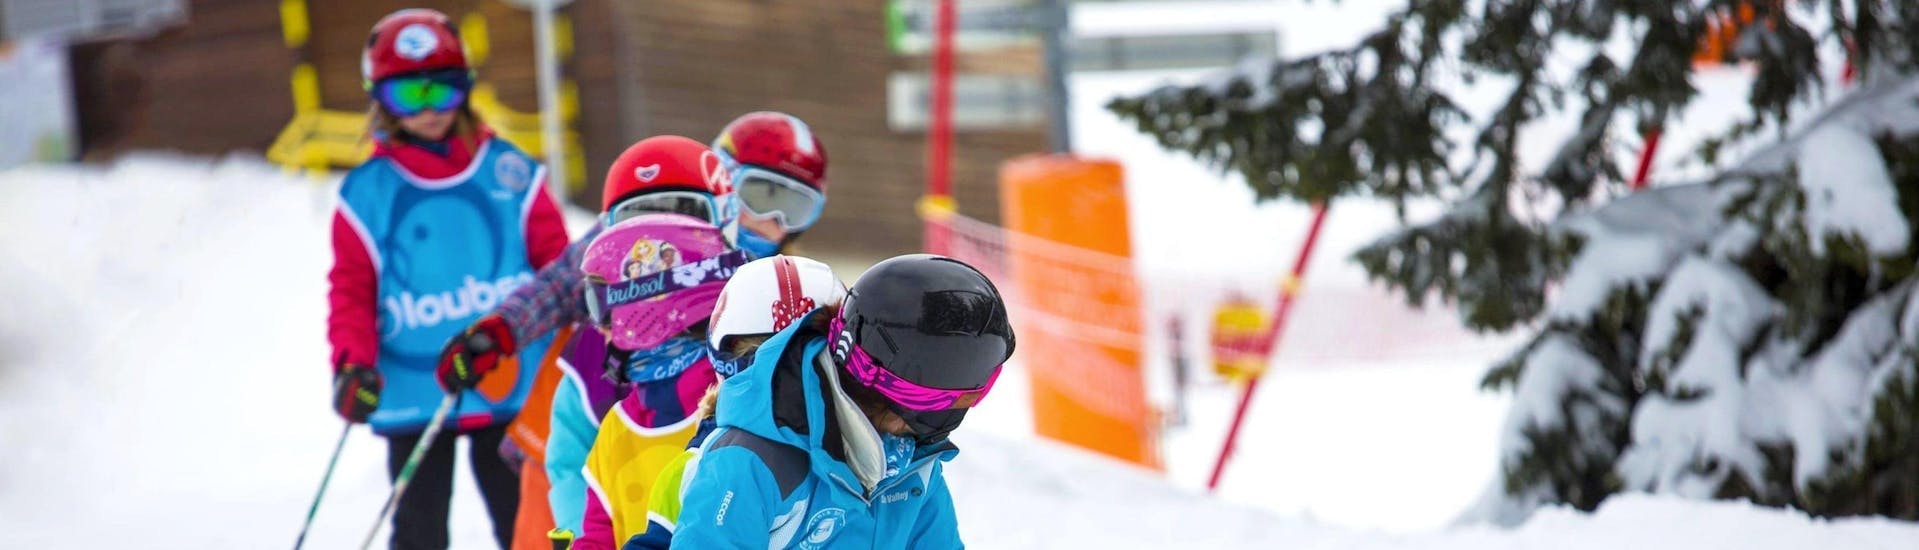 Kinder-Skikurs ab 7 Jahren ohne Erfahrung.